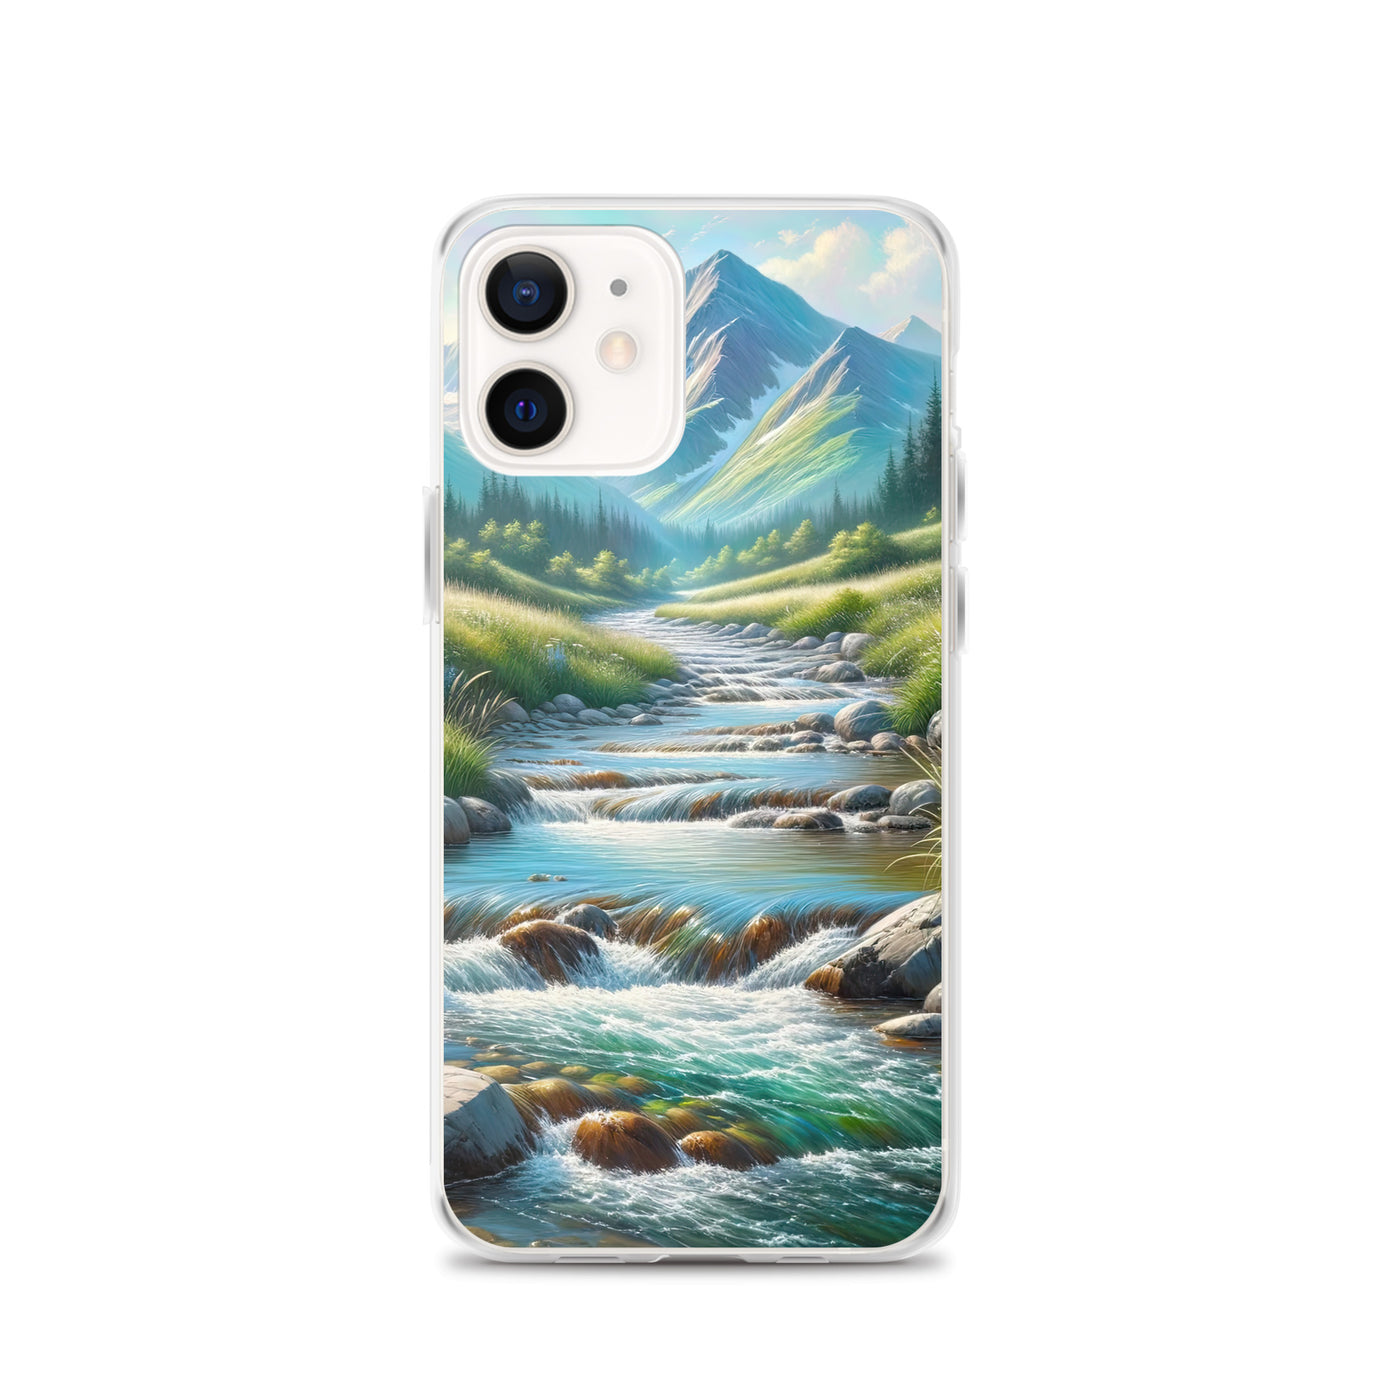 Sanfter Gebirgsbach in Ölgemälde, klares Wasser über glatten Felsen - iPhone Schutzhülle (durchsichtig) berge xxx yyy zzz iPhone 12